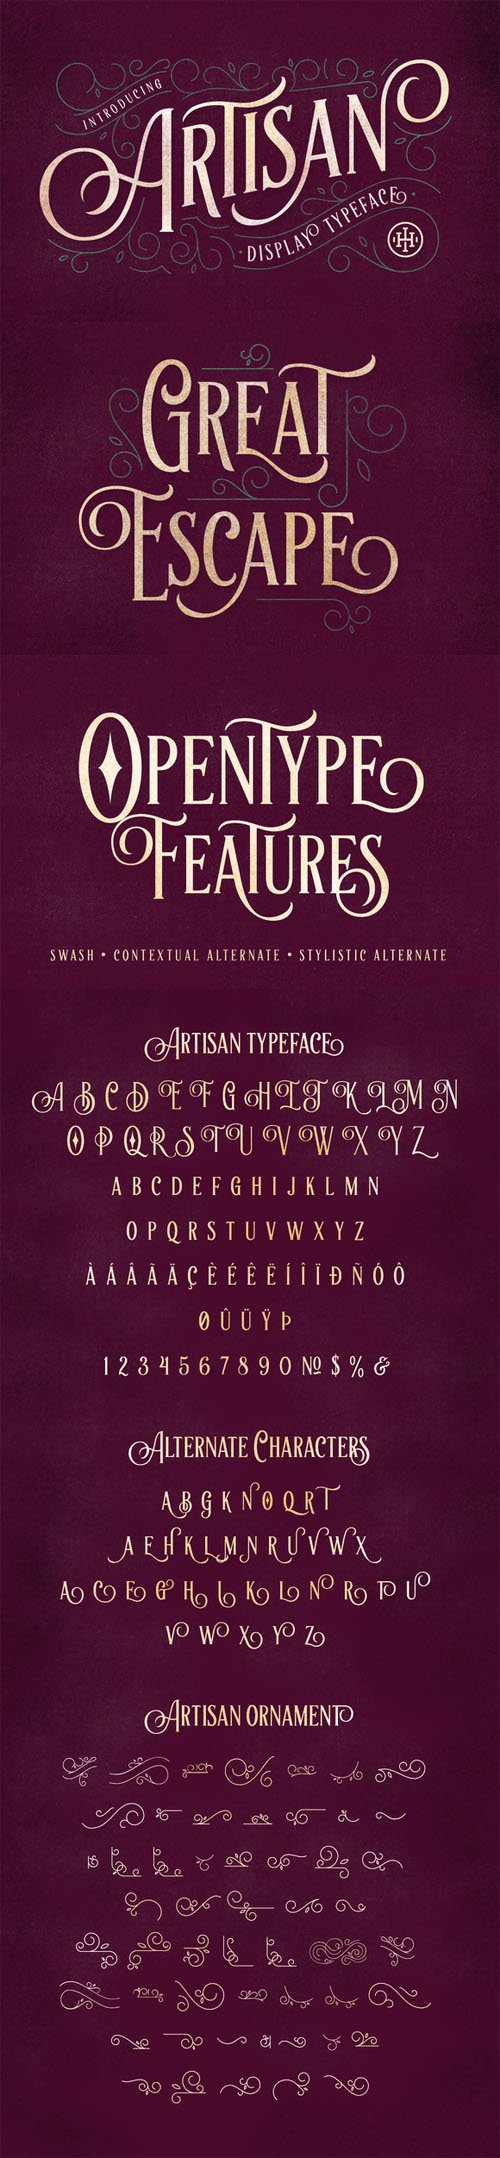 artisan display typeface download free